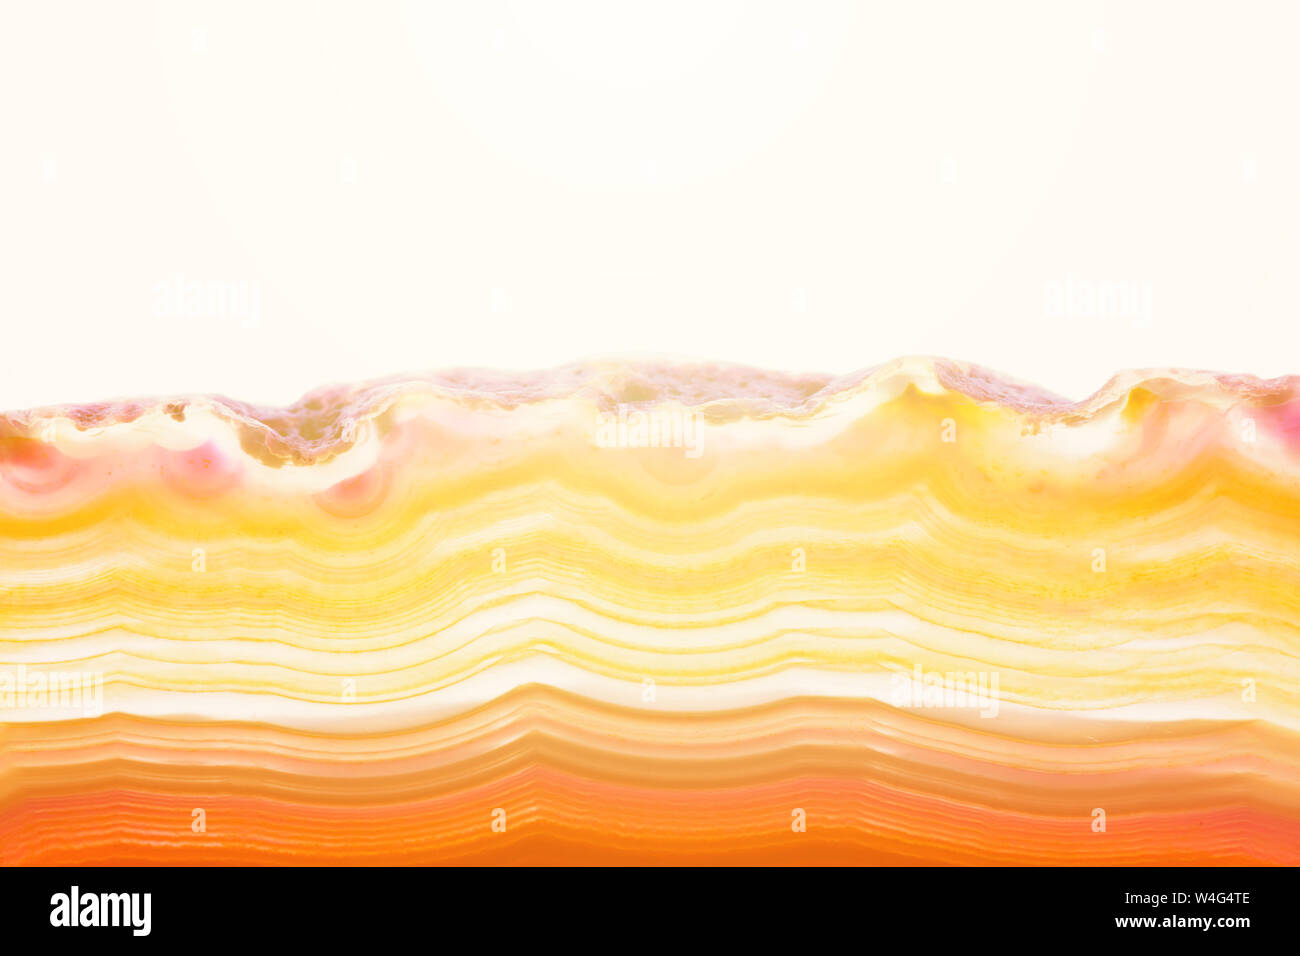 Résumé fond, orange et jaune à rayures coupe d'agate minéraux avec sunbeam isolé sur fond blanc Banque D'Images